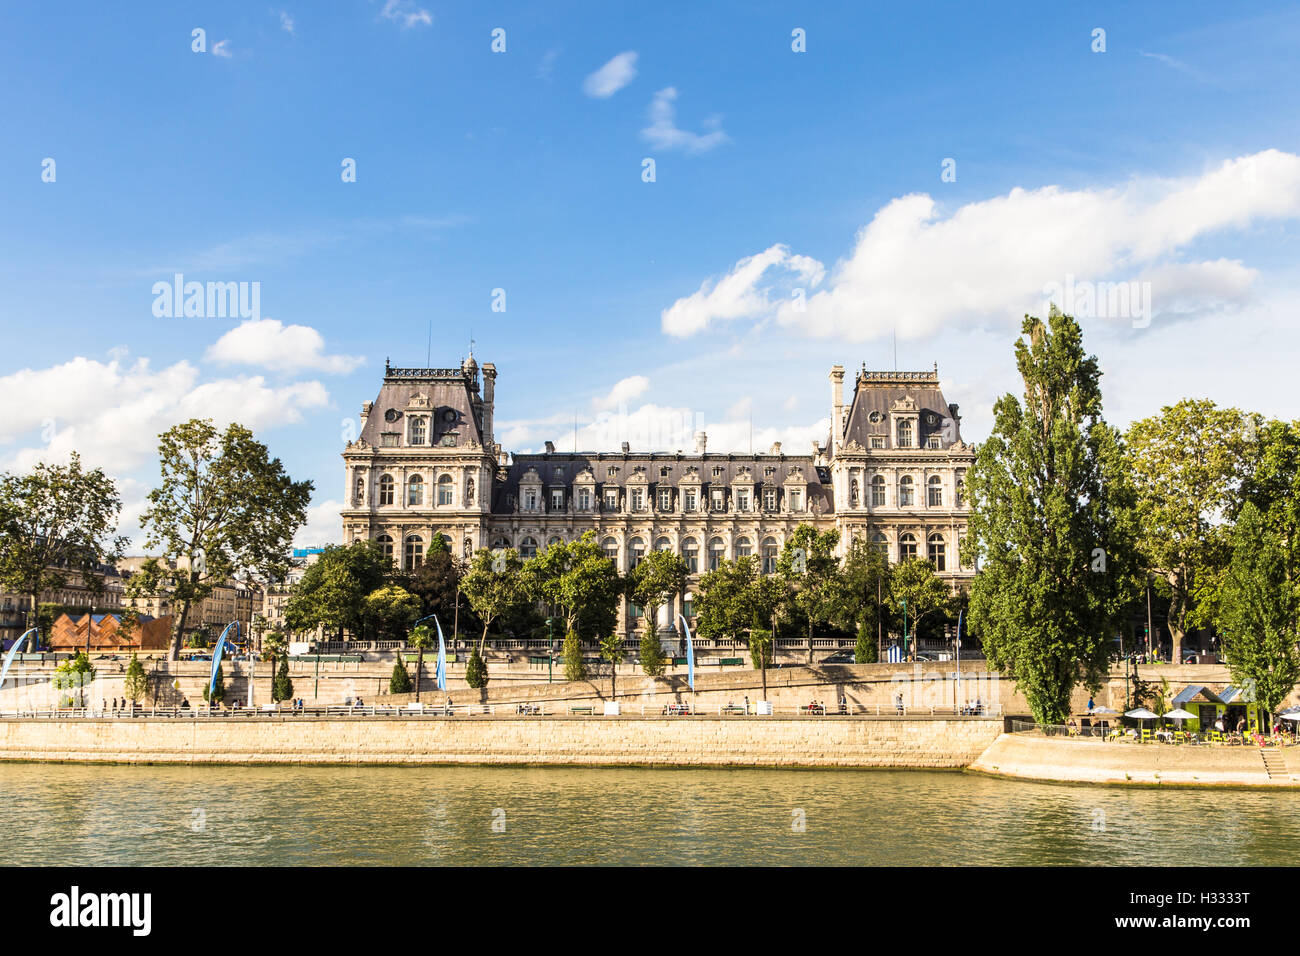 La façade de l'hôtel de ville de Paris (hôtel de ville) le long de la Seine à Paris, capitale de la France. Banque D'Images